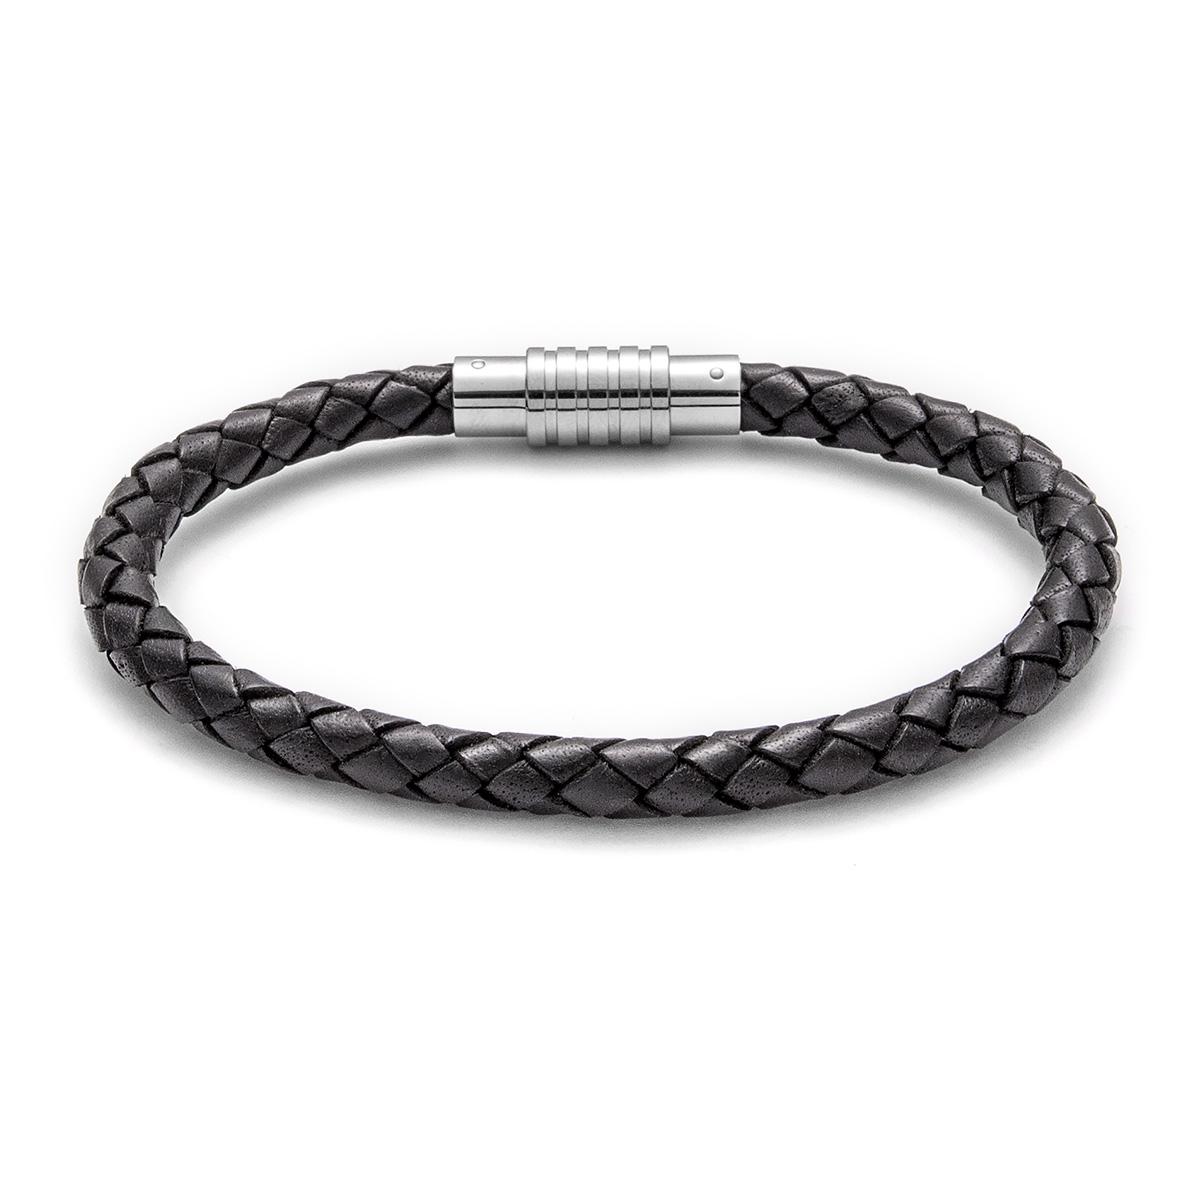 Black Bracelet Men's Braided Leather Bangle Stainless Steel